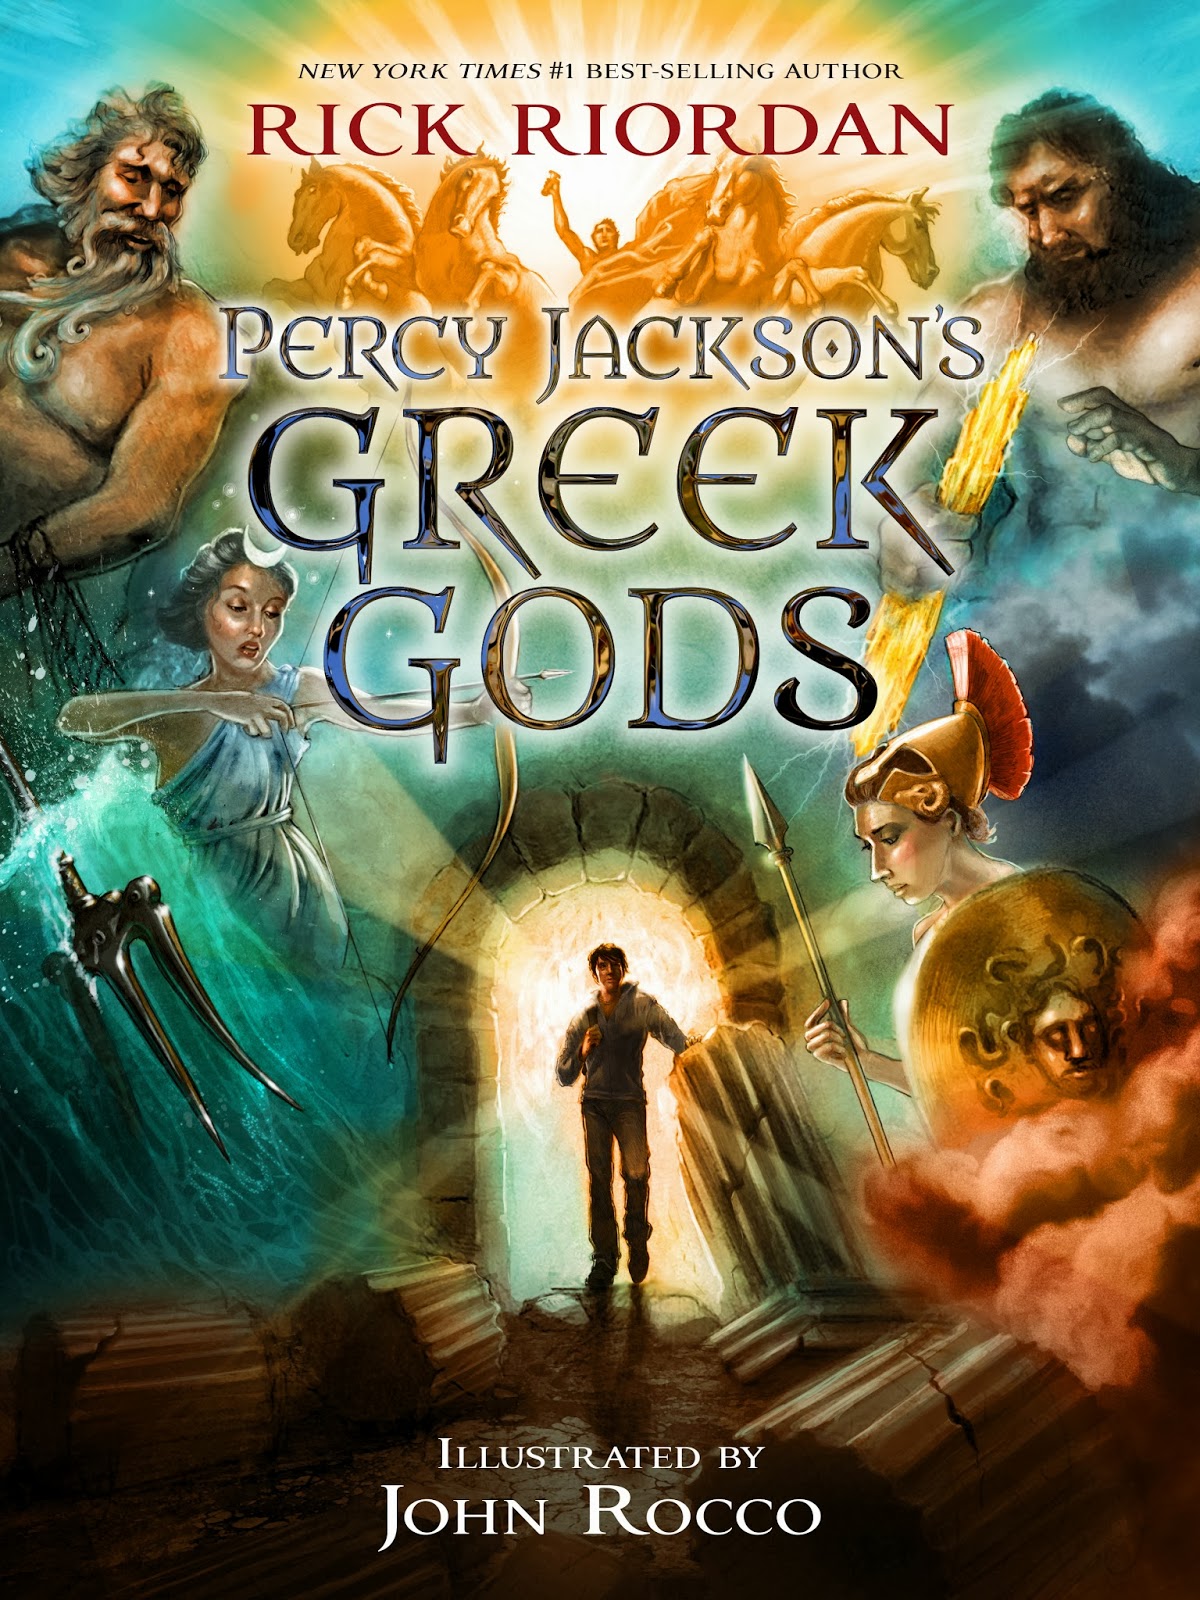 Universo Literario de Rick Riordan: Percy Jackson y los Dioses del Olimpo